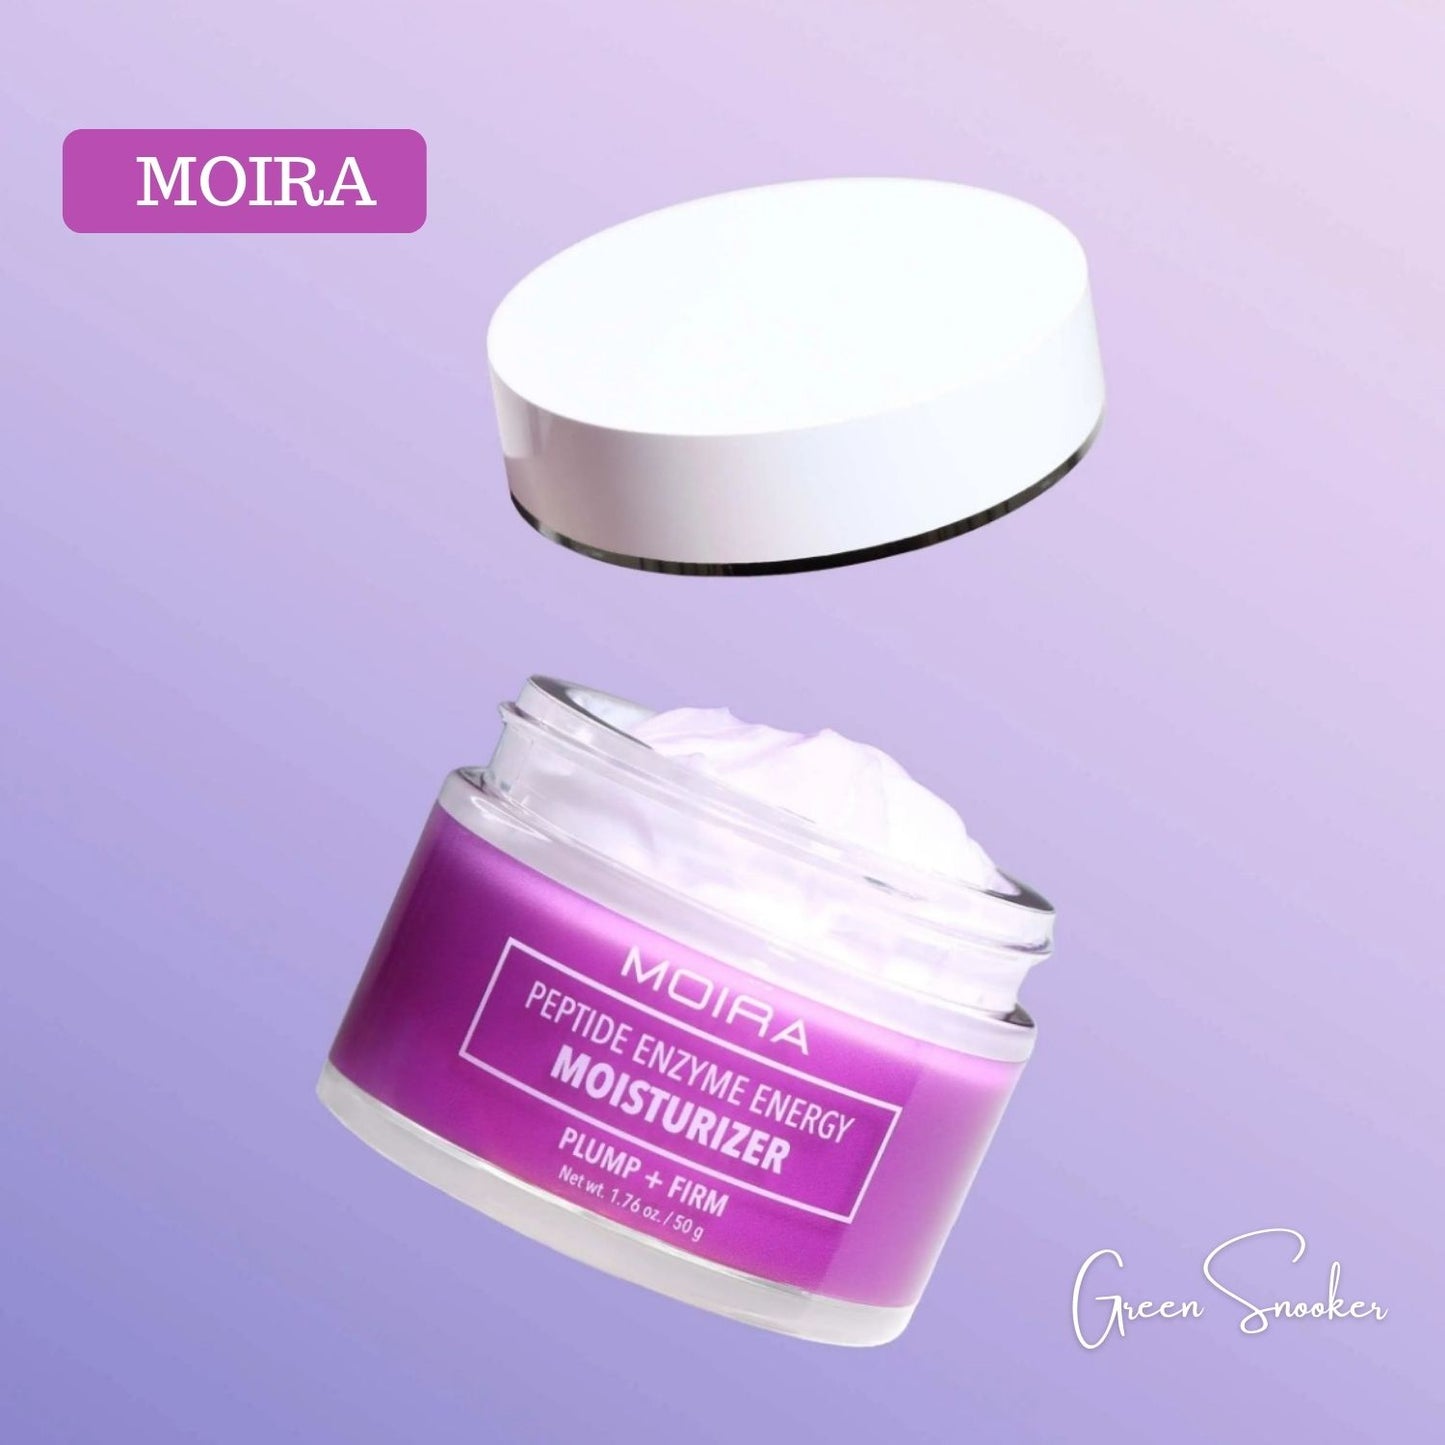 Moira, Peptide Enzyme Energy Moisturizer, Korean Cosmetic